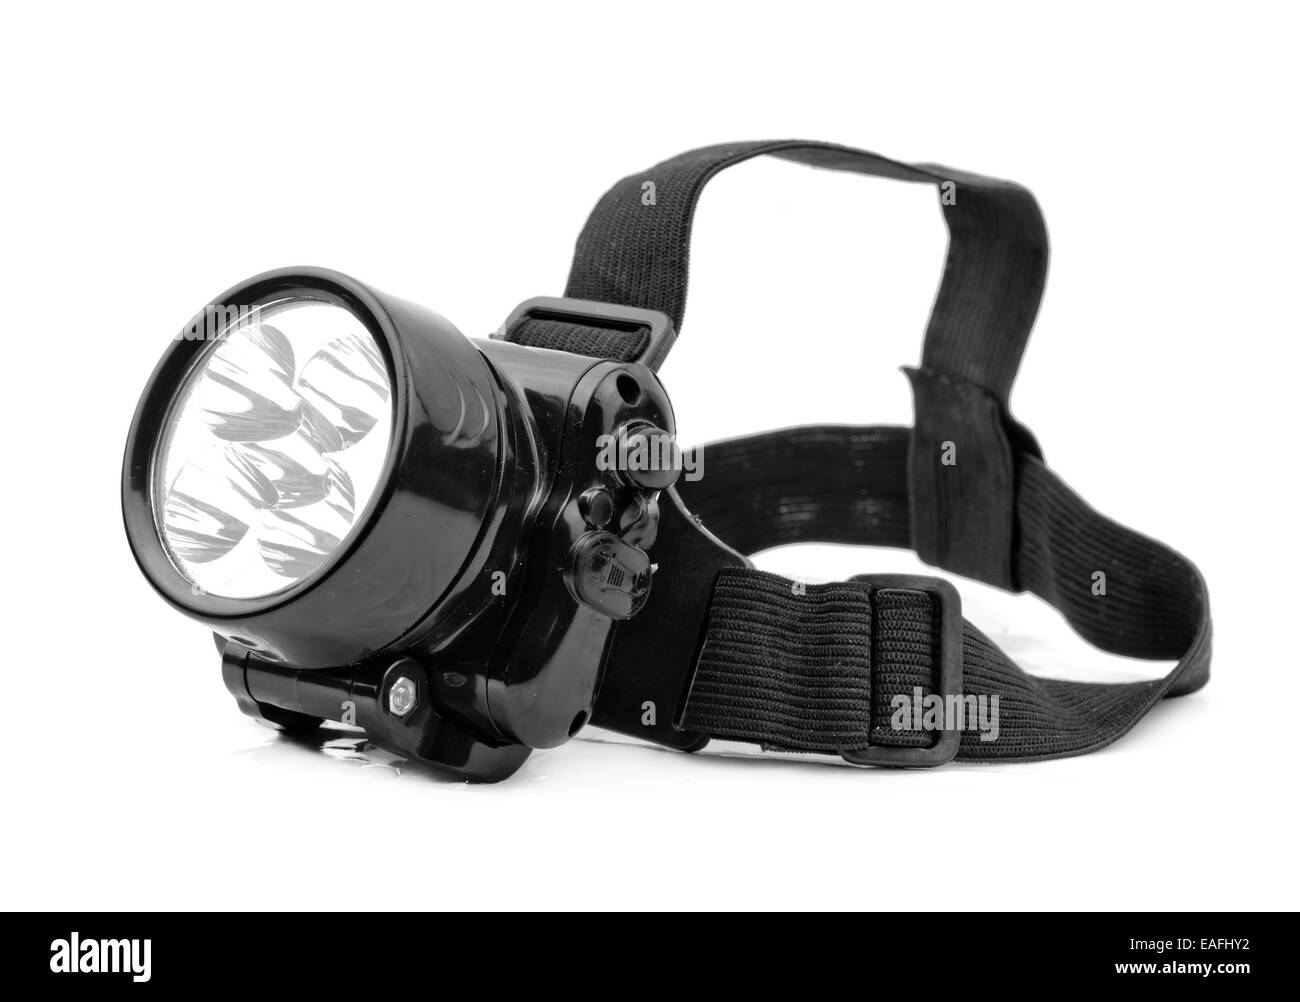 flashlight, isolated on white background Stock Photo